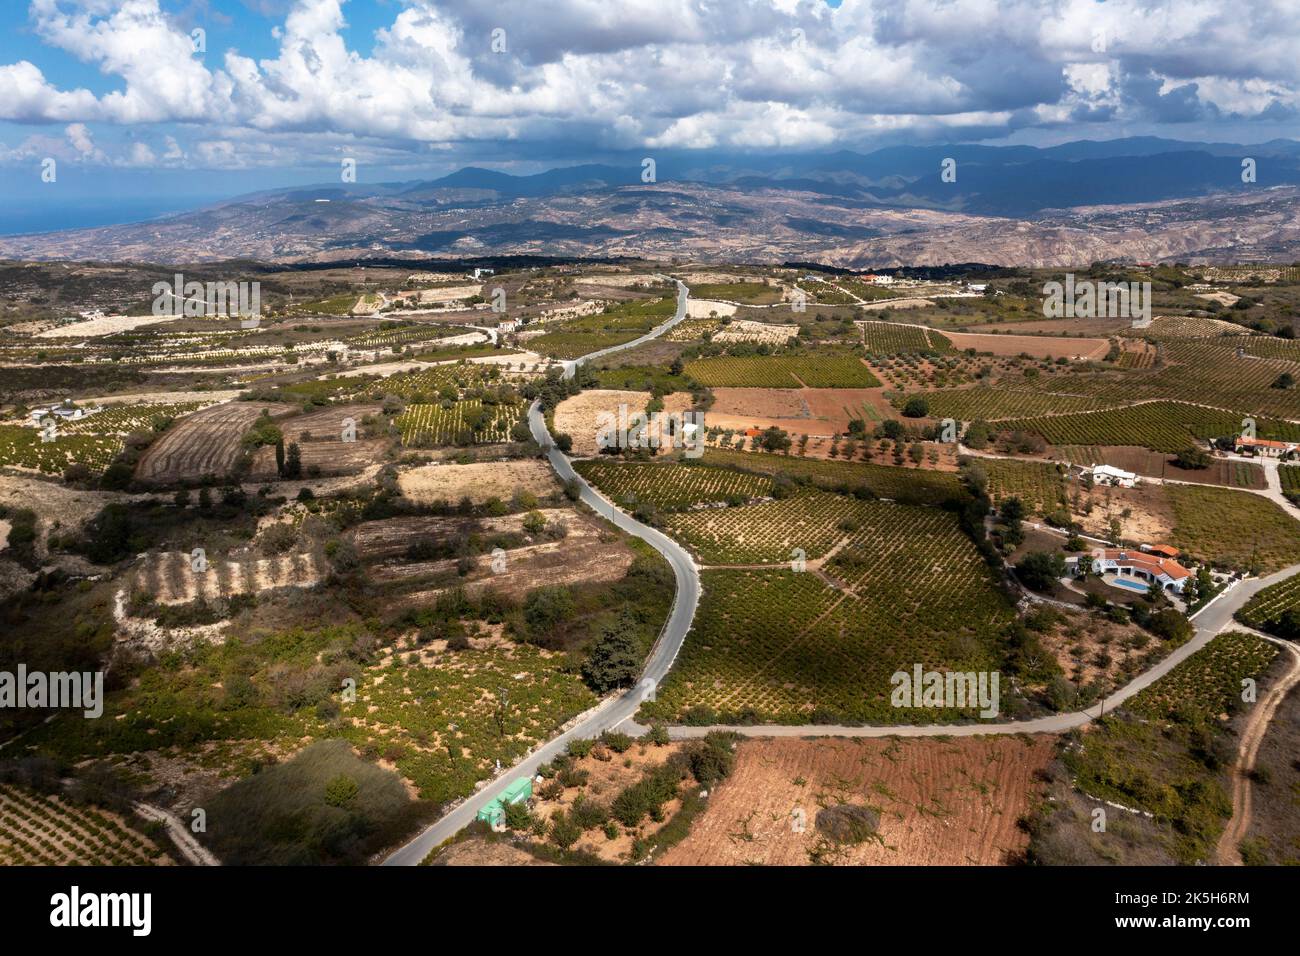 Luftaufnahme der Weinberge und Landschaft in der Nähe des Dorfes Kathikas, Paphos-Bezirk. Das Gebiet liegt an der Weinstraße Zyperns im Südwesten Zyperns. Stockfoto